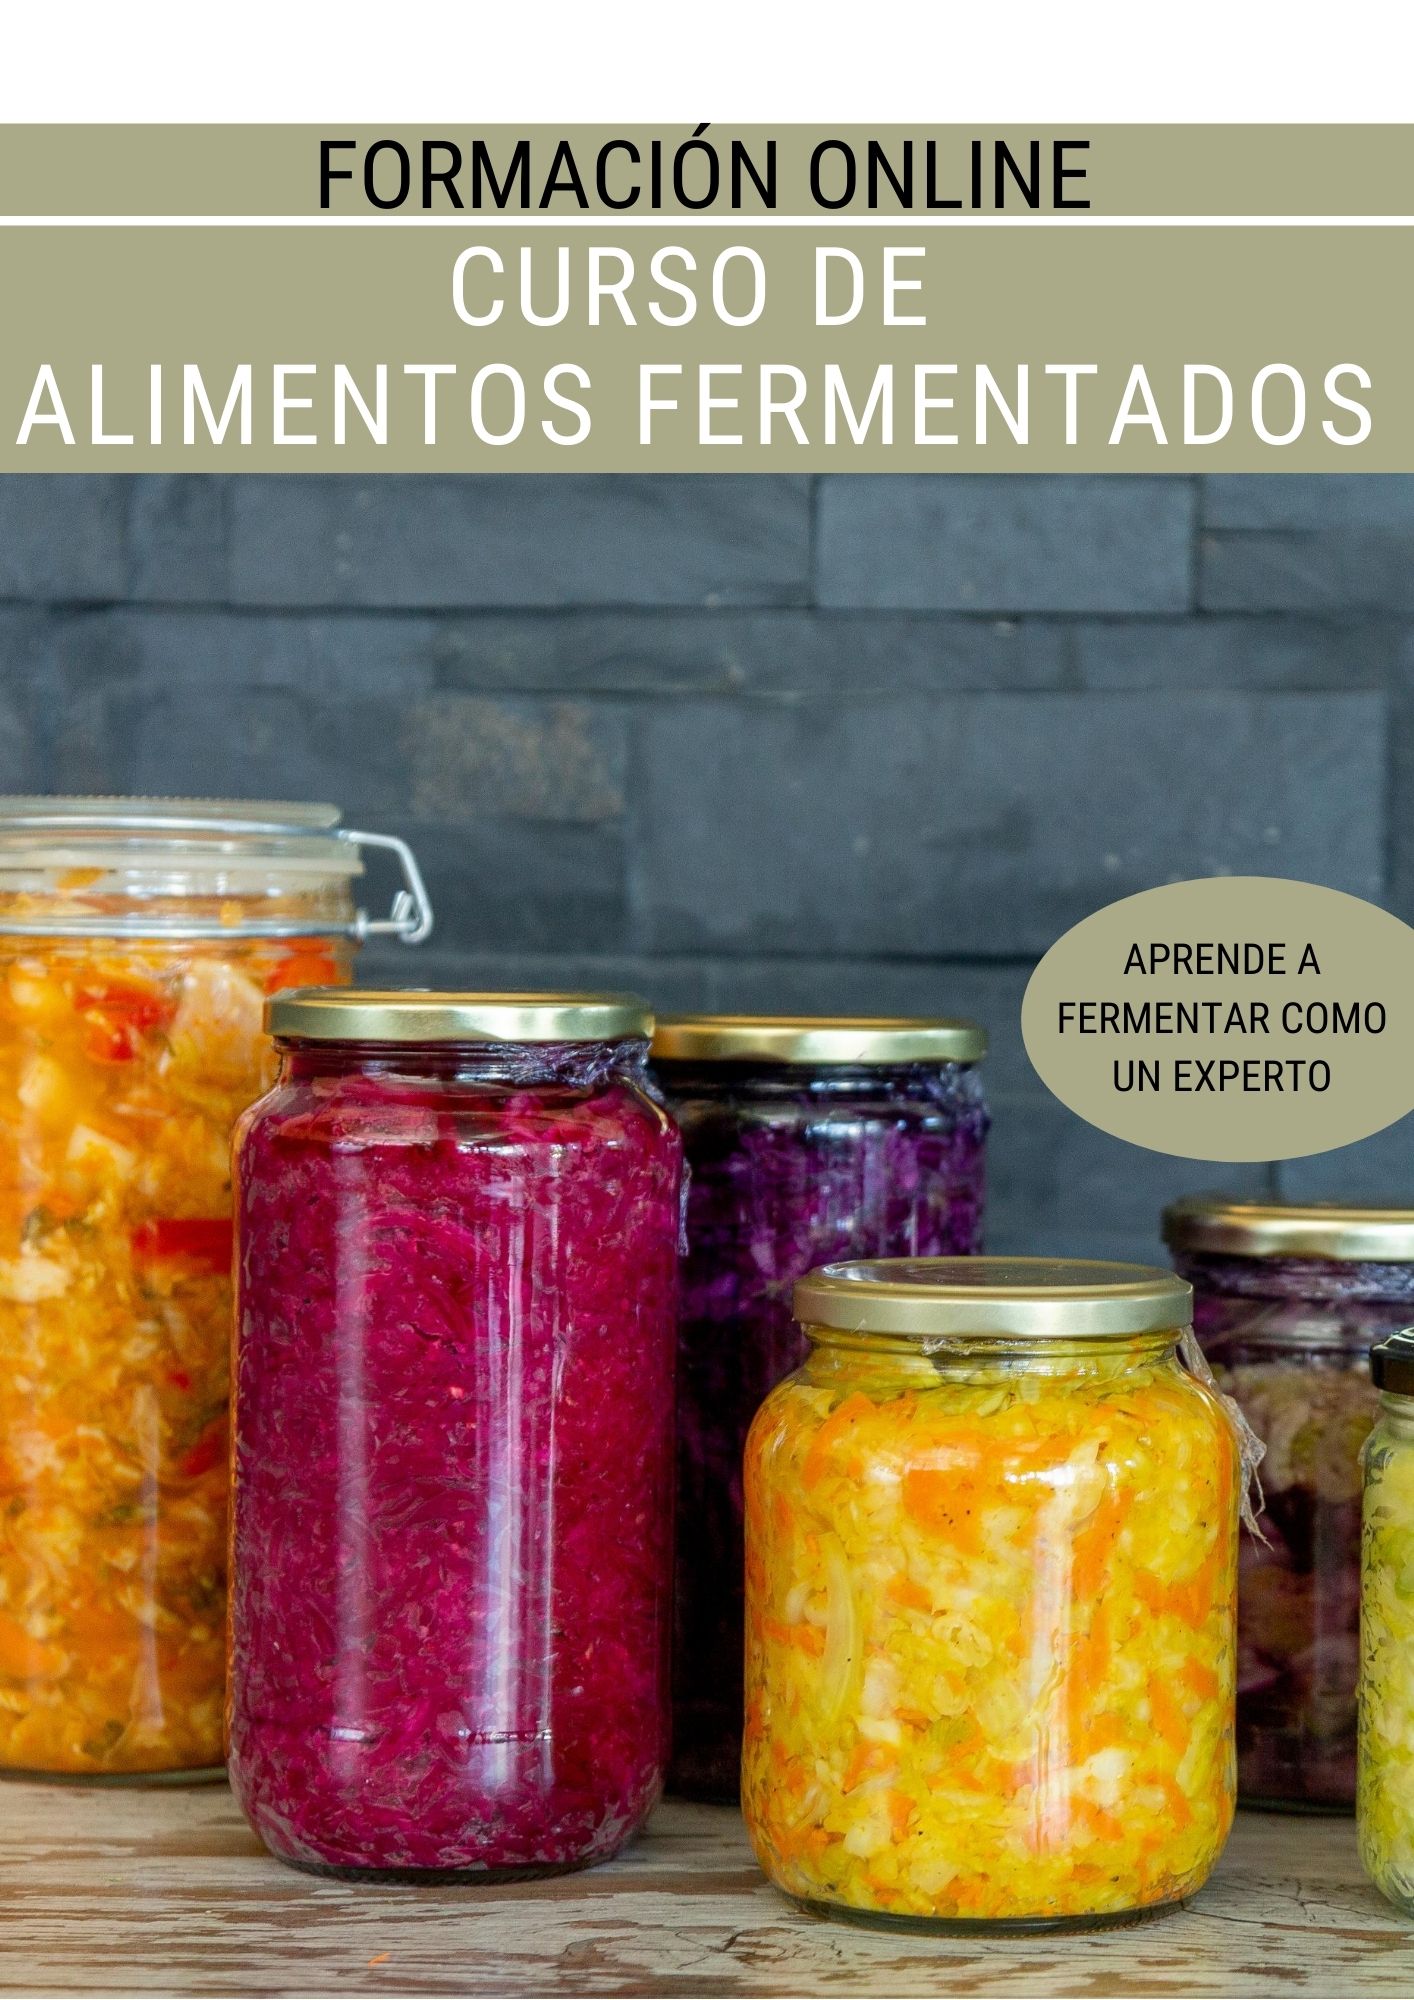 Curso Alimentos Fermentados | Luis Garcia Vegan Food